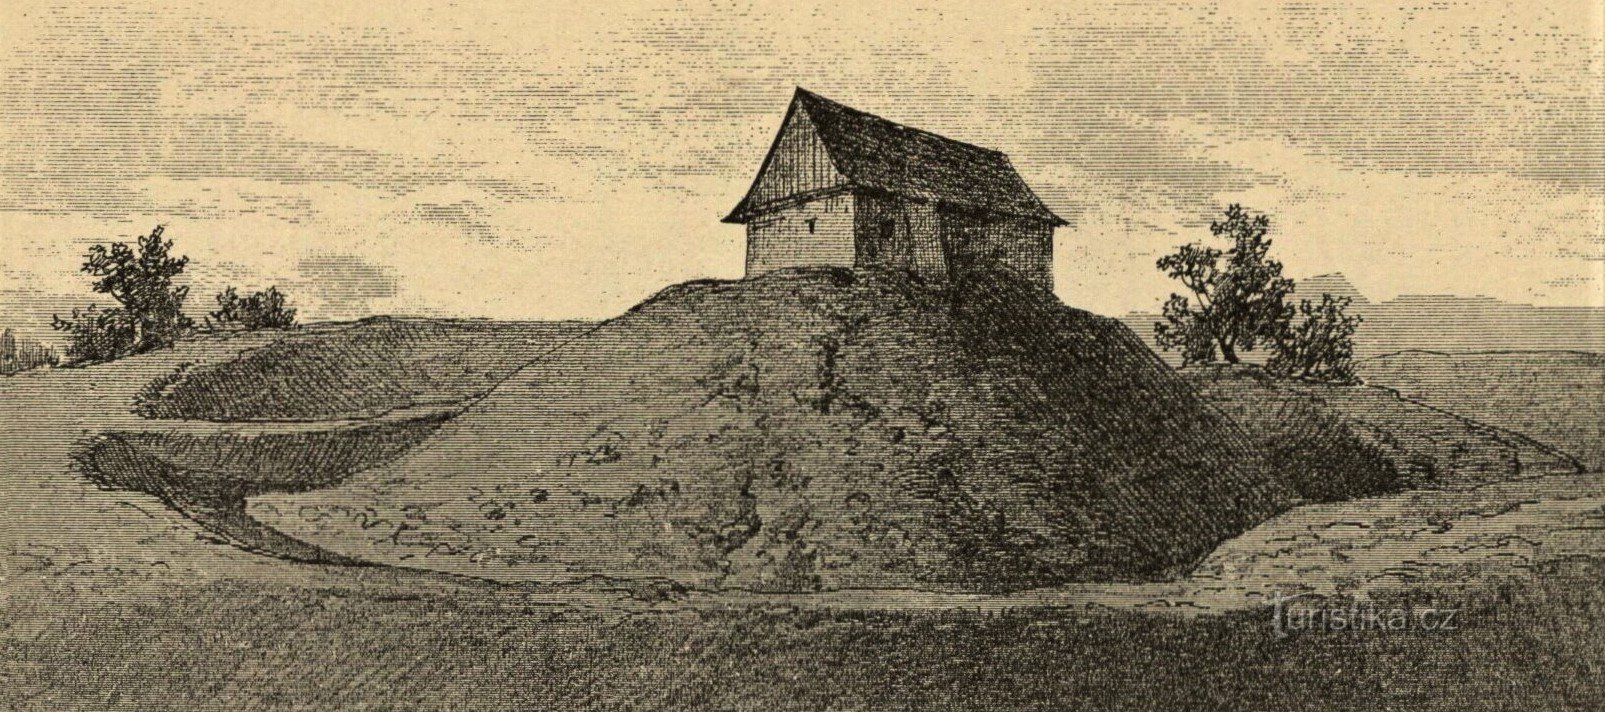 Aussehen der Festung Velkosvatoňovice im 19. Jahrhundert